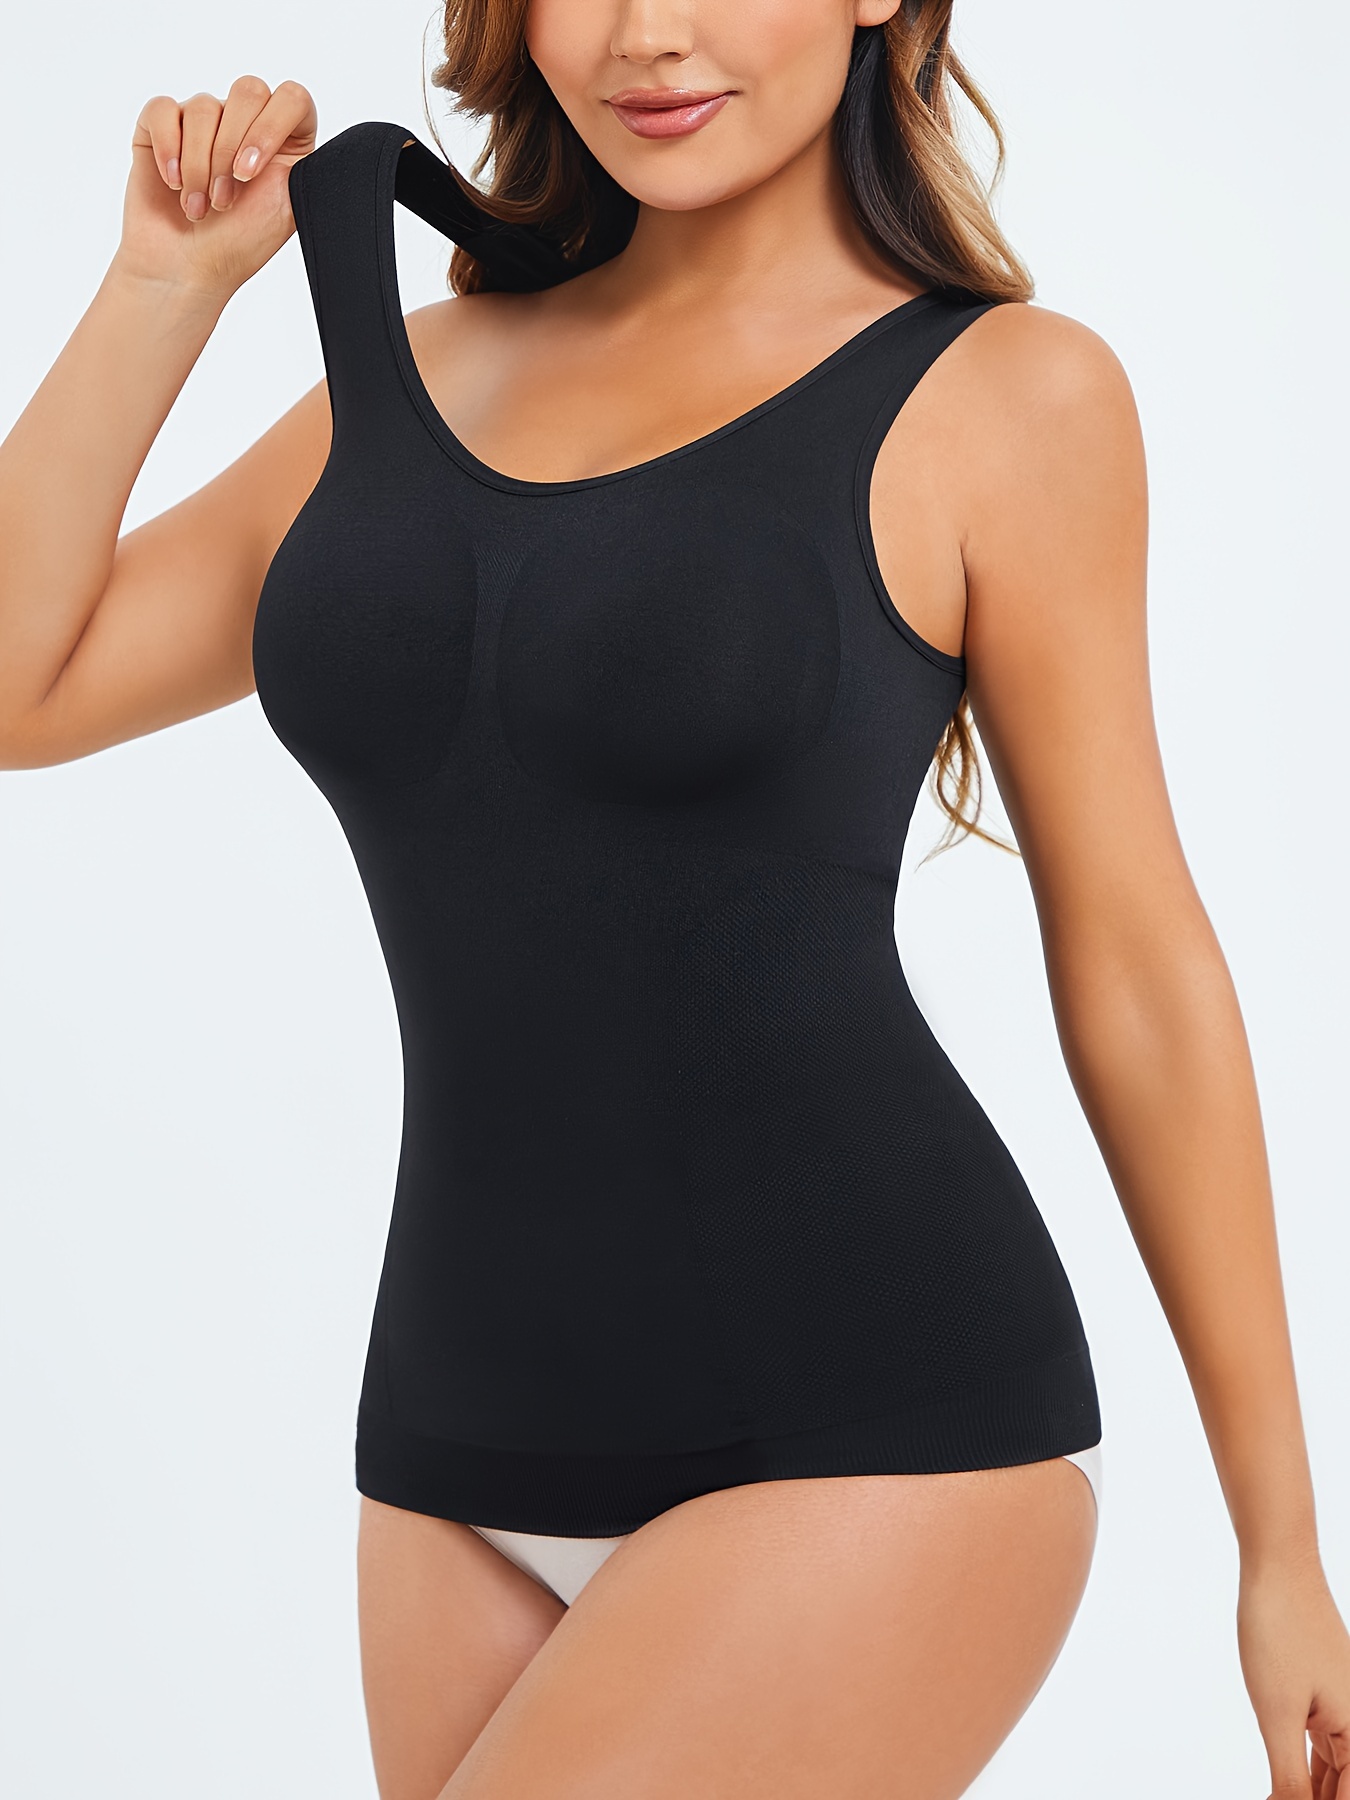 Buy AOSBOEI Women Tank Bodysuit Shapewear Tops Tummy Control